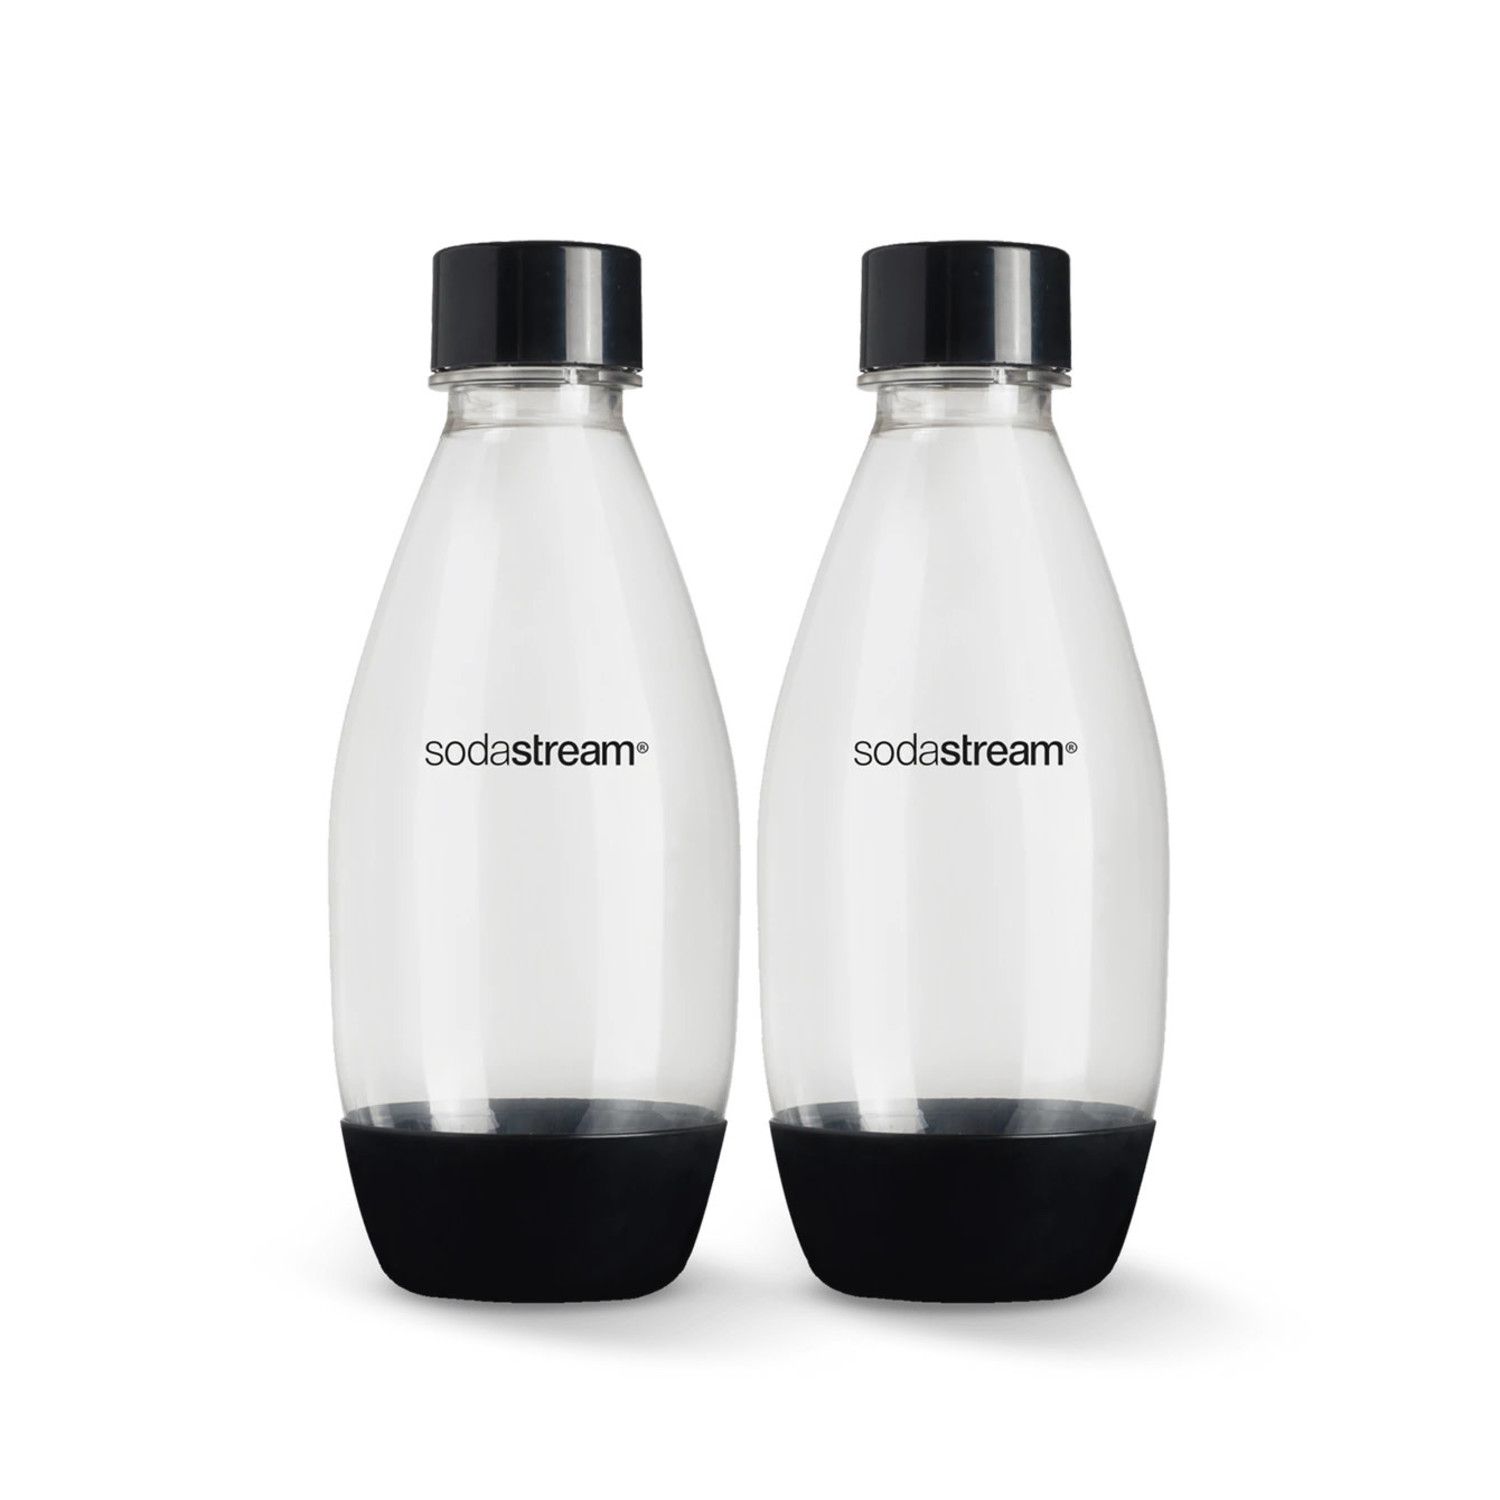 sodastream bottles, 0.5L dishwasher safe black WAIT - Whisk